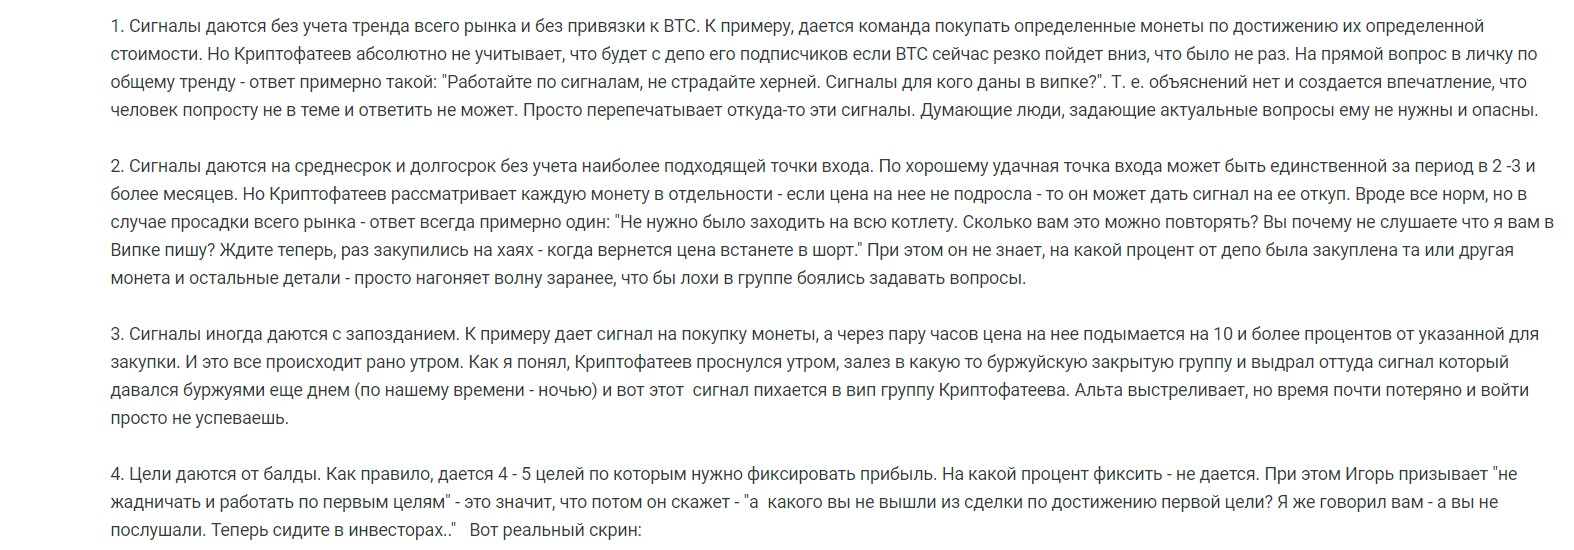 Отрицательные отзывы о платном VIP канале Cryptofateev Игоря Фатеева